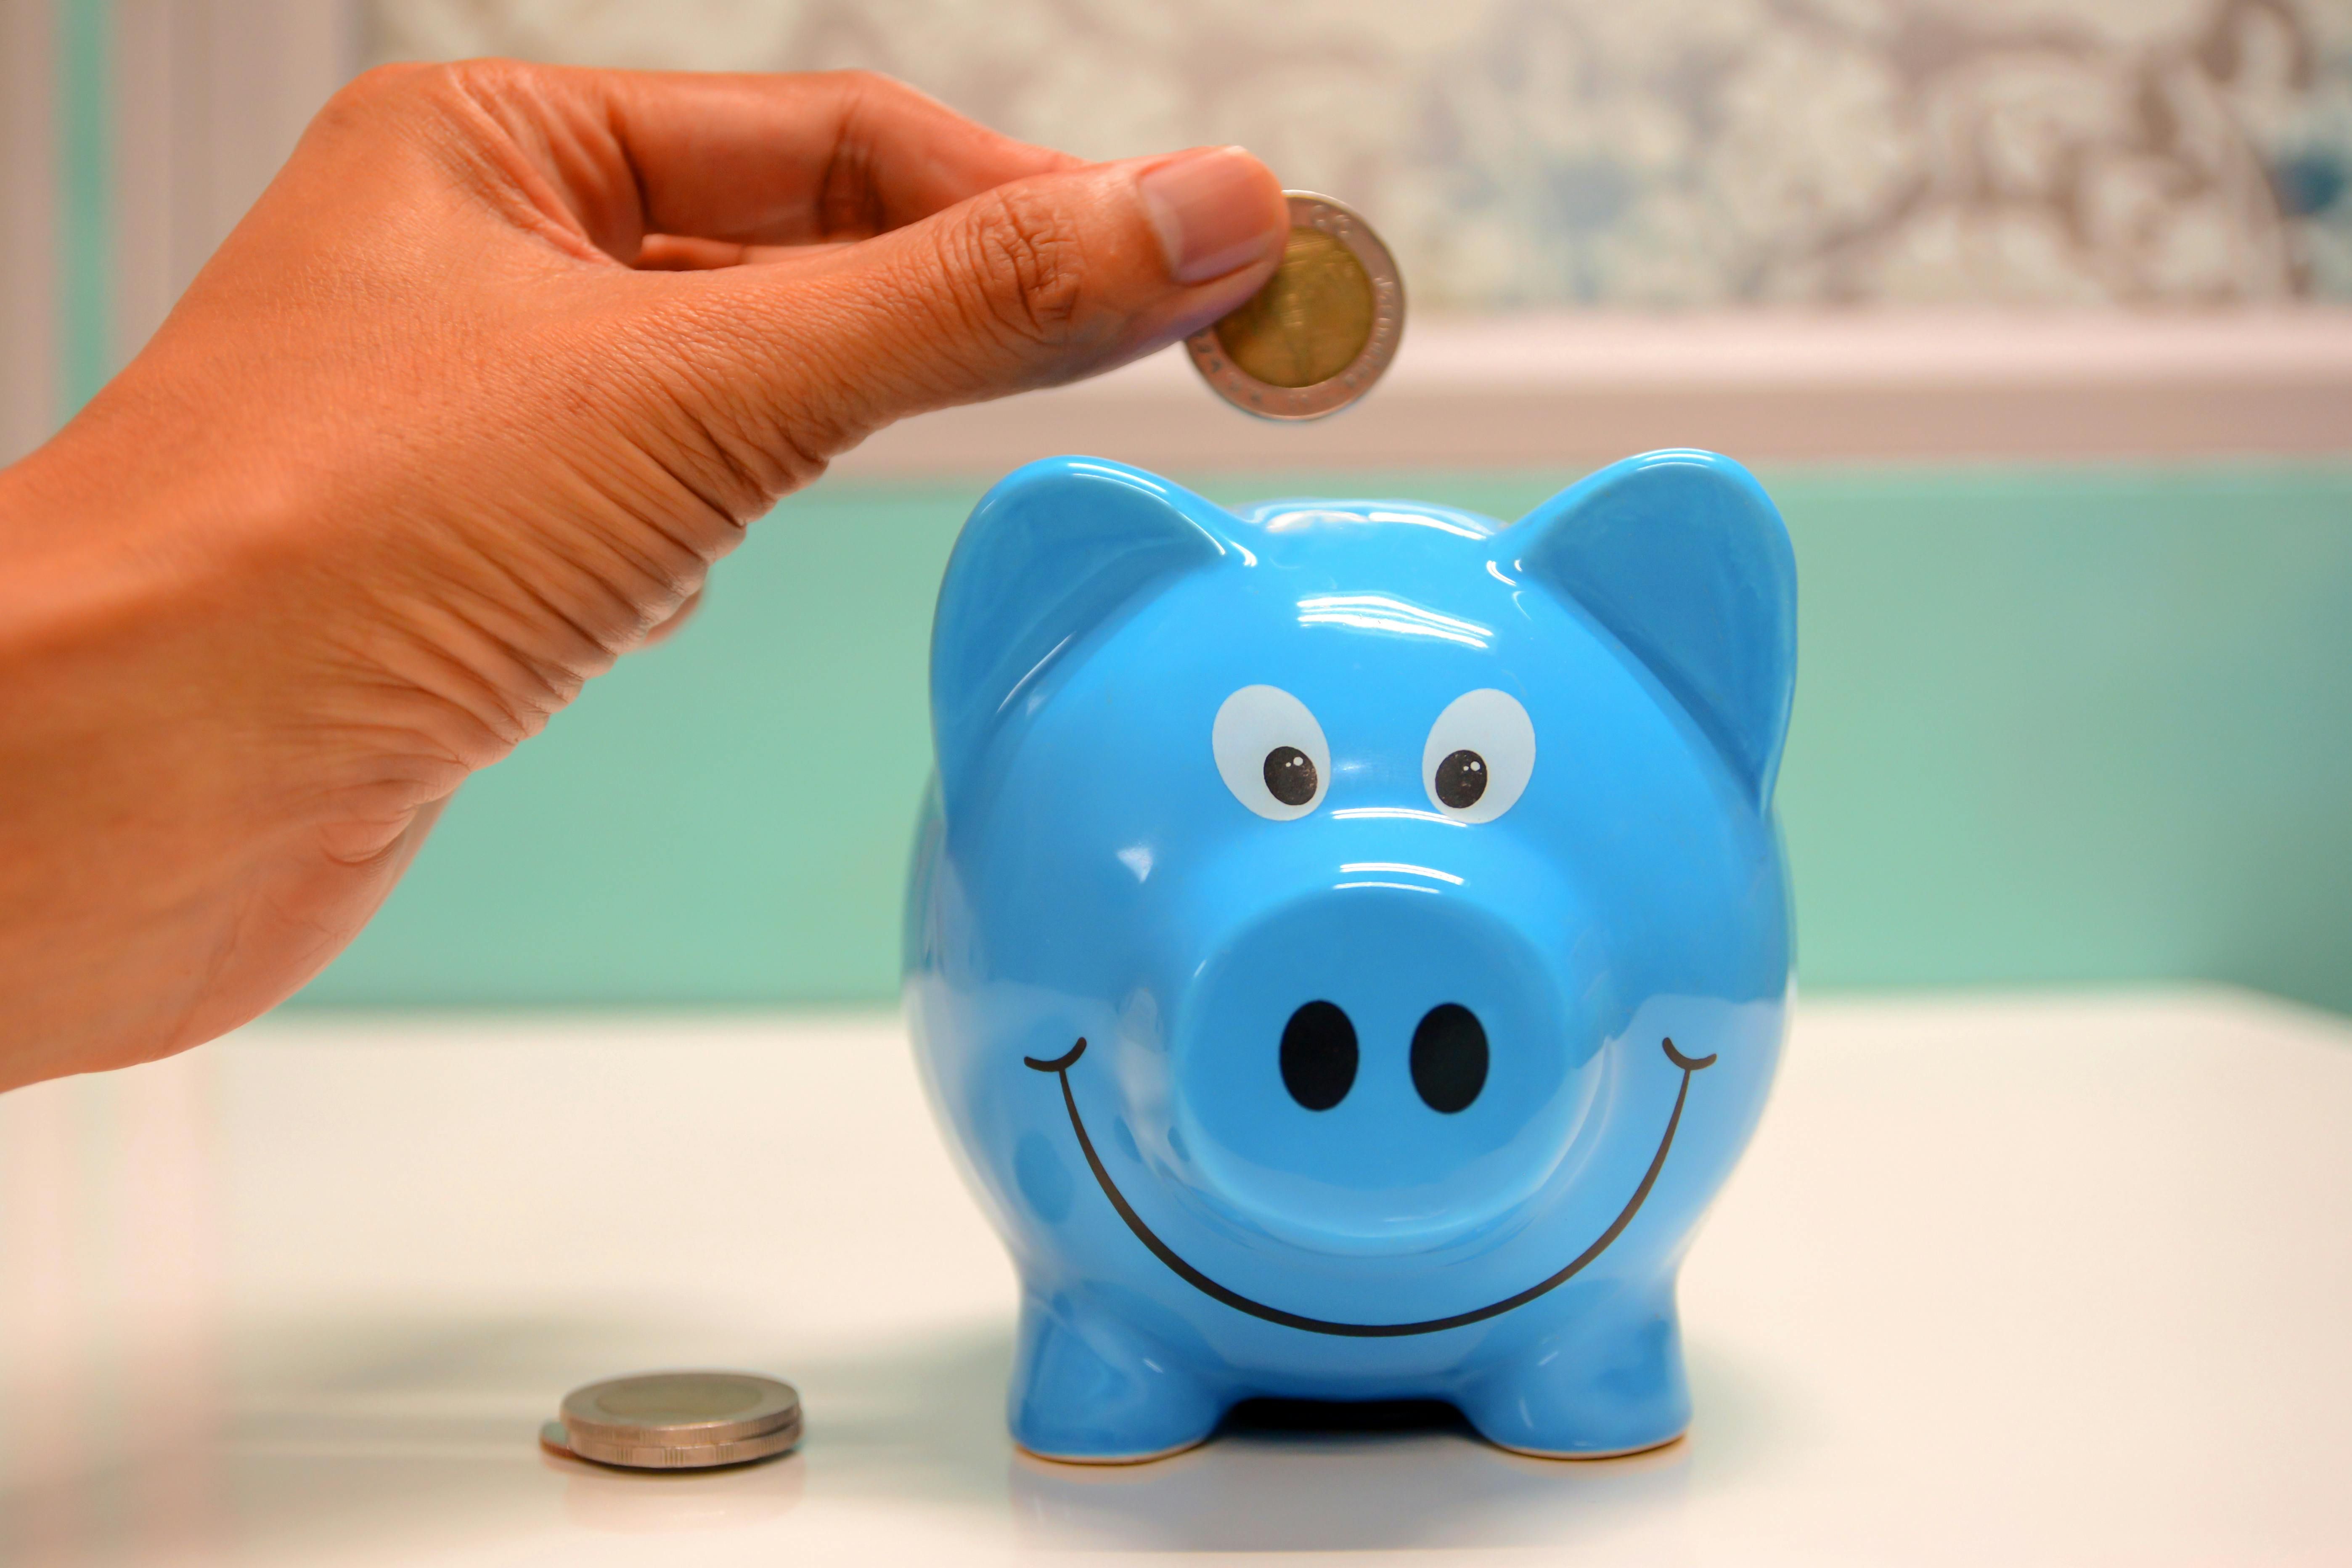 Das Bild zeigt ein blaues Sparschwein und eine Hand, welche eine Münze hineinwirft. Das zu füllende Sparschwein symbolisiert die Finanzierungsunterstützungen bei einer Hilfsmittelversorgung. 